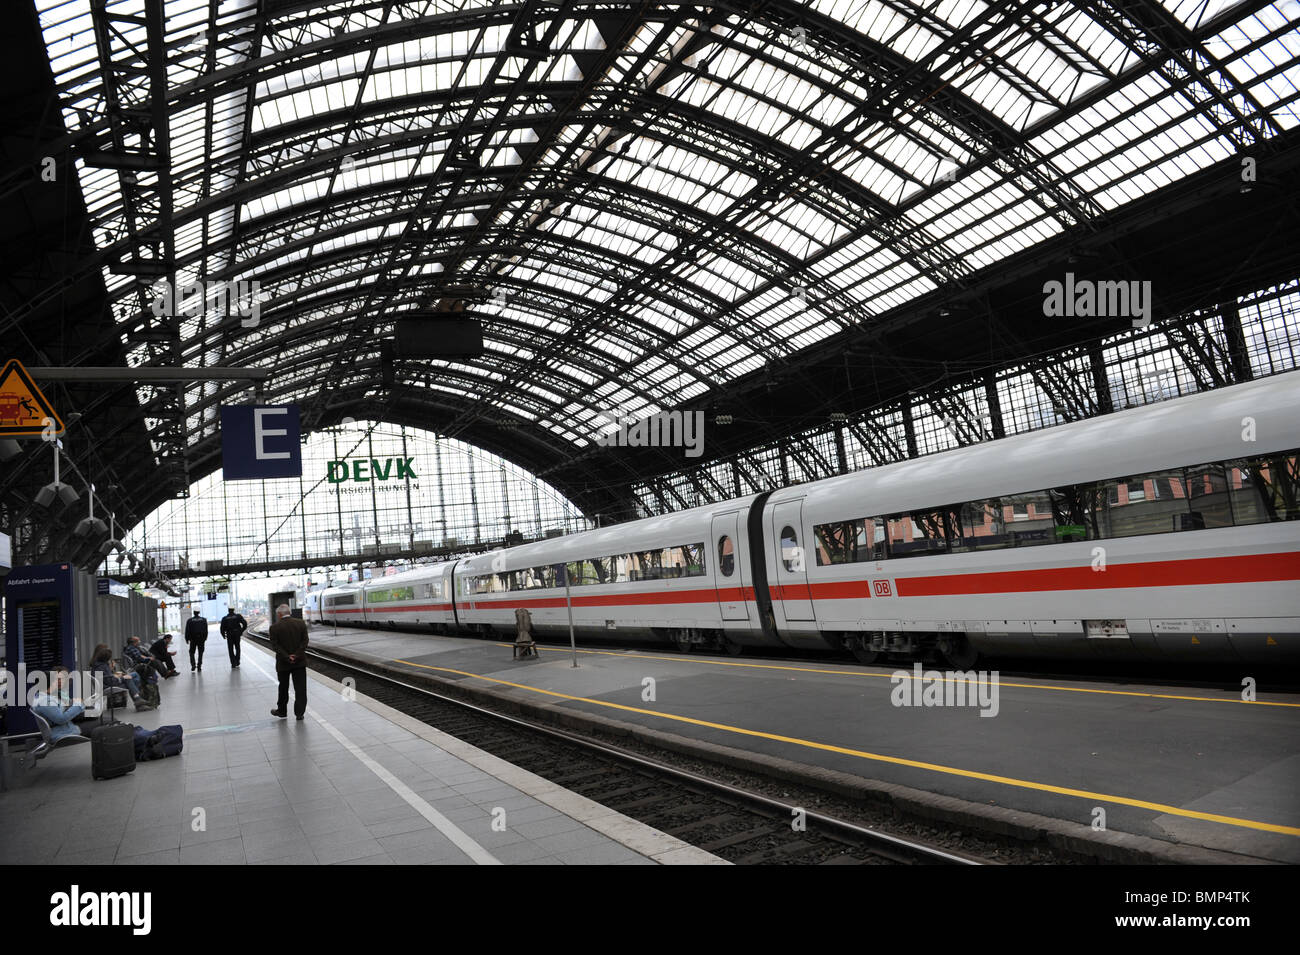 Cologne Koln railway station Germany Deutschland Europe with Deutsche Bahn DB ICE train Stock Photo